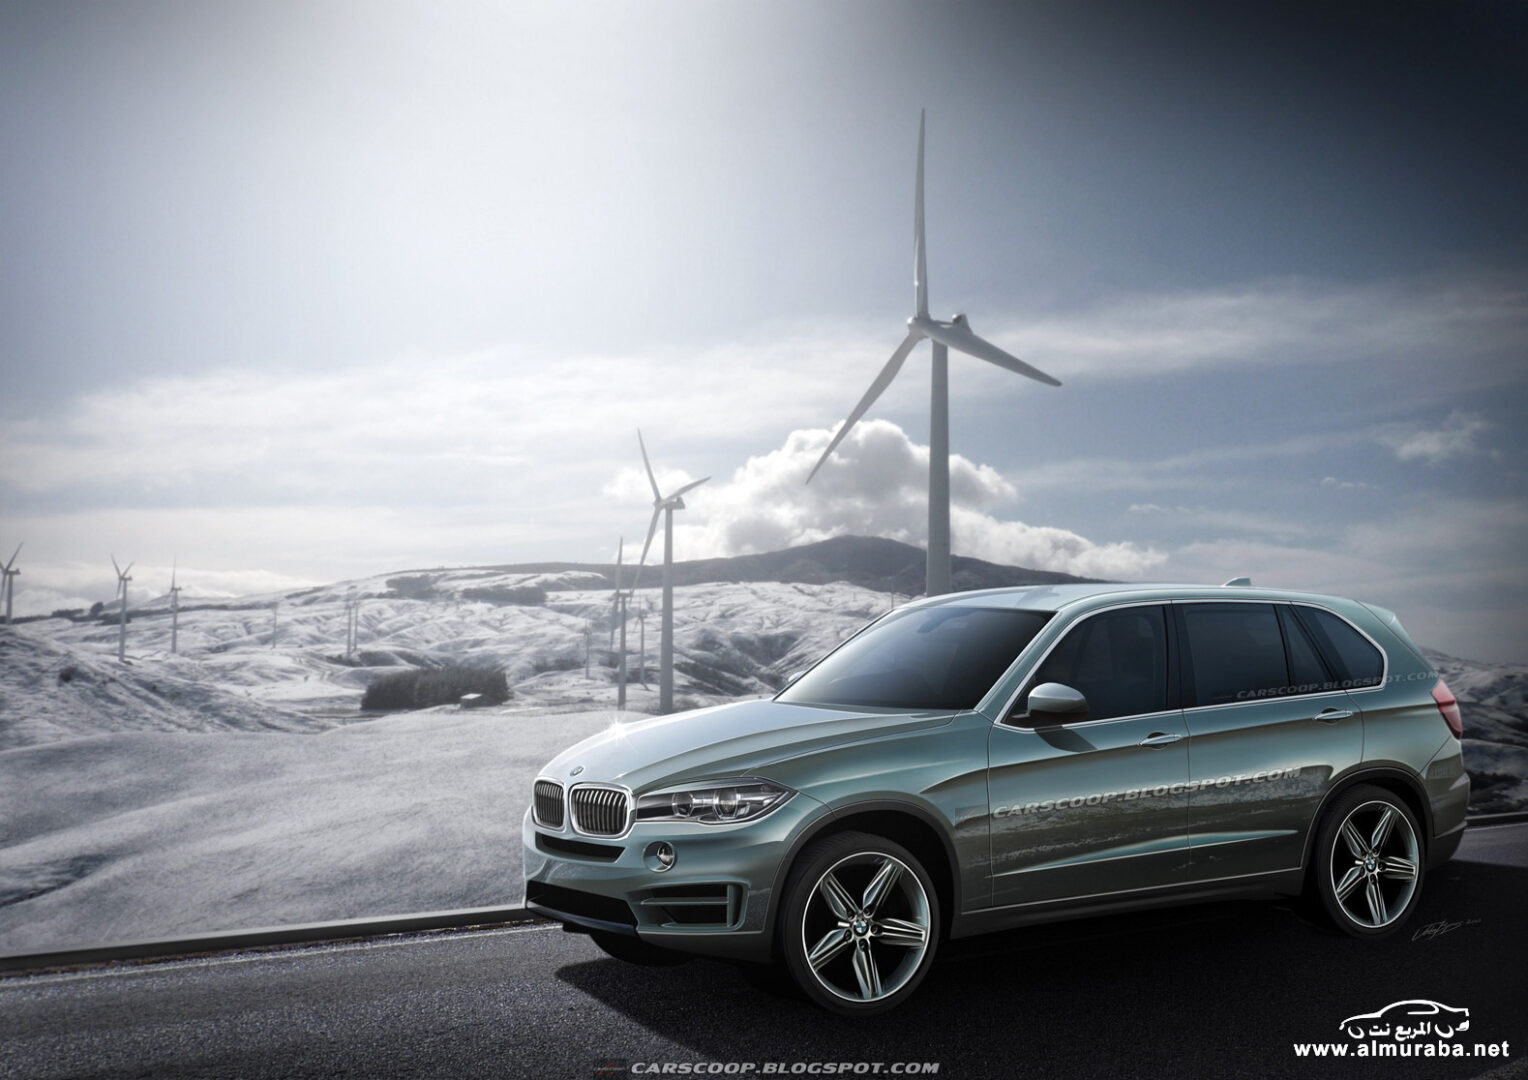 بي ام دبليو اكس فايف 2014 في أول صور له والتي ستحصل على تطويرات كبيرة BMW X5 2